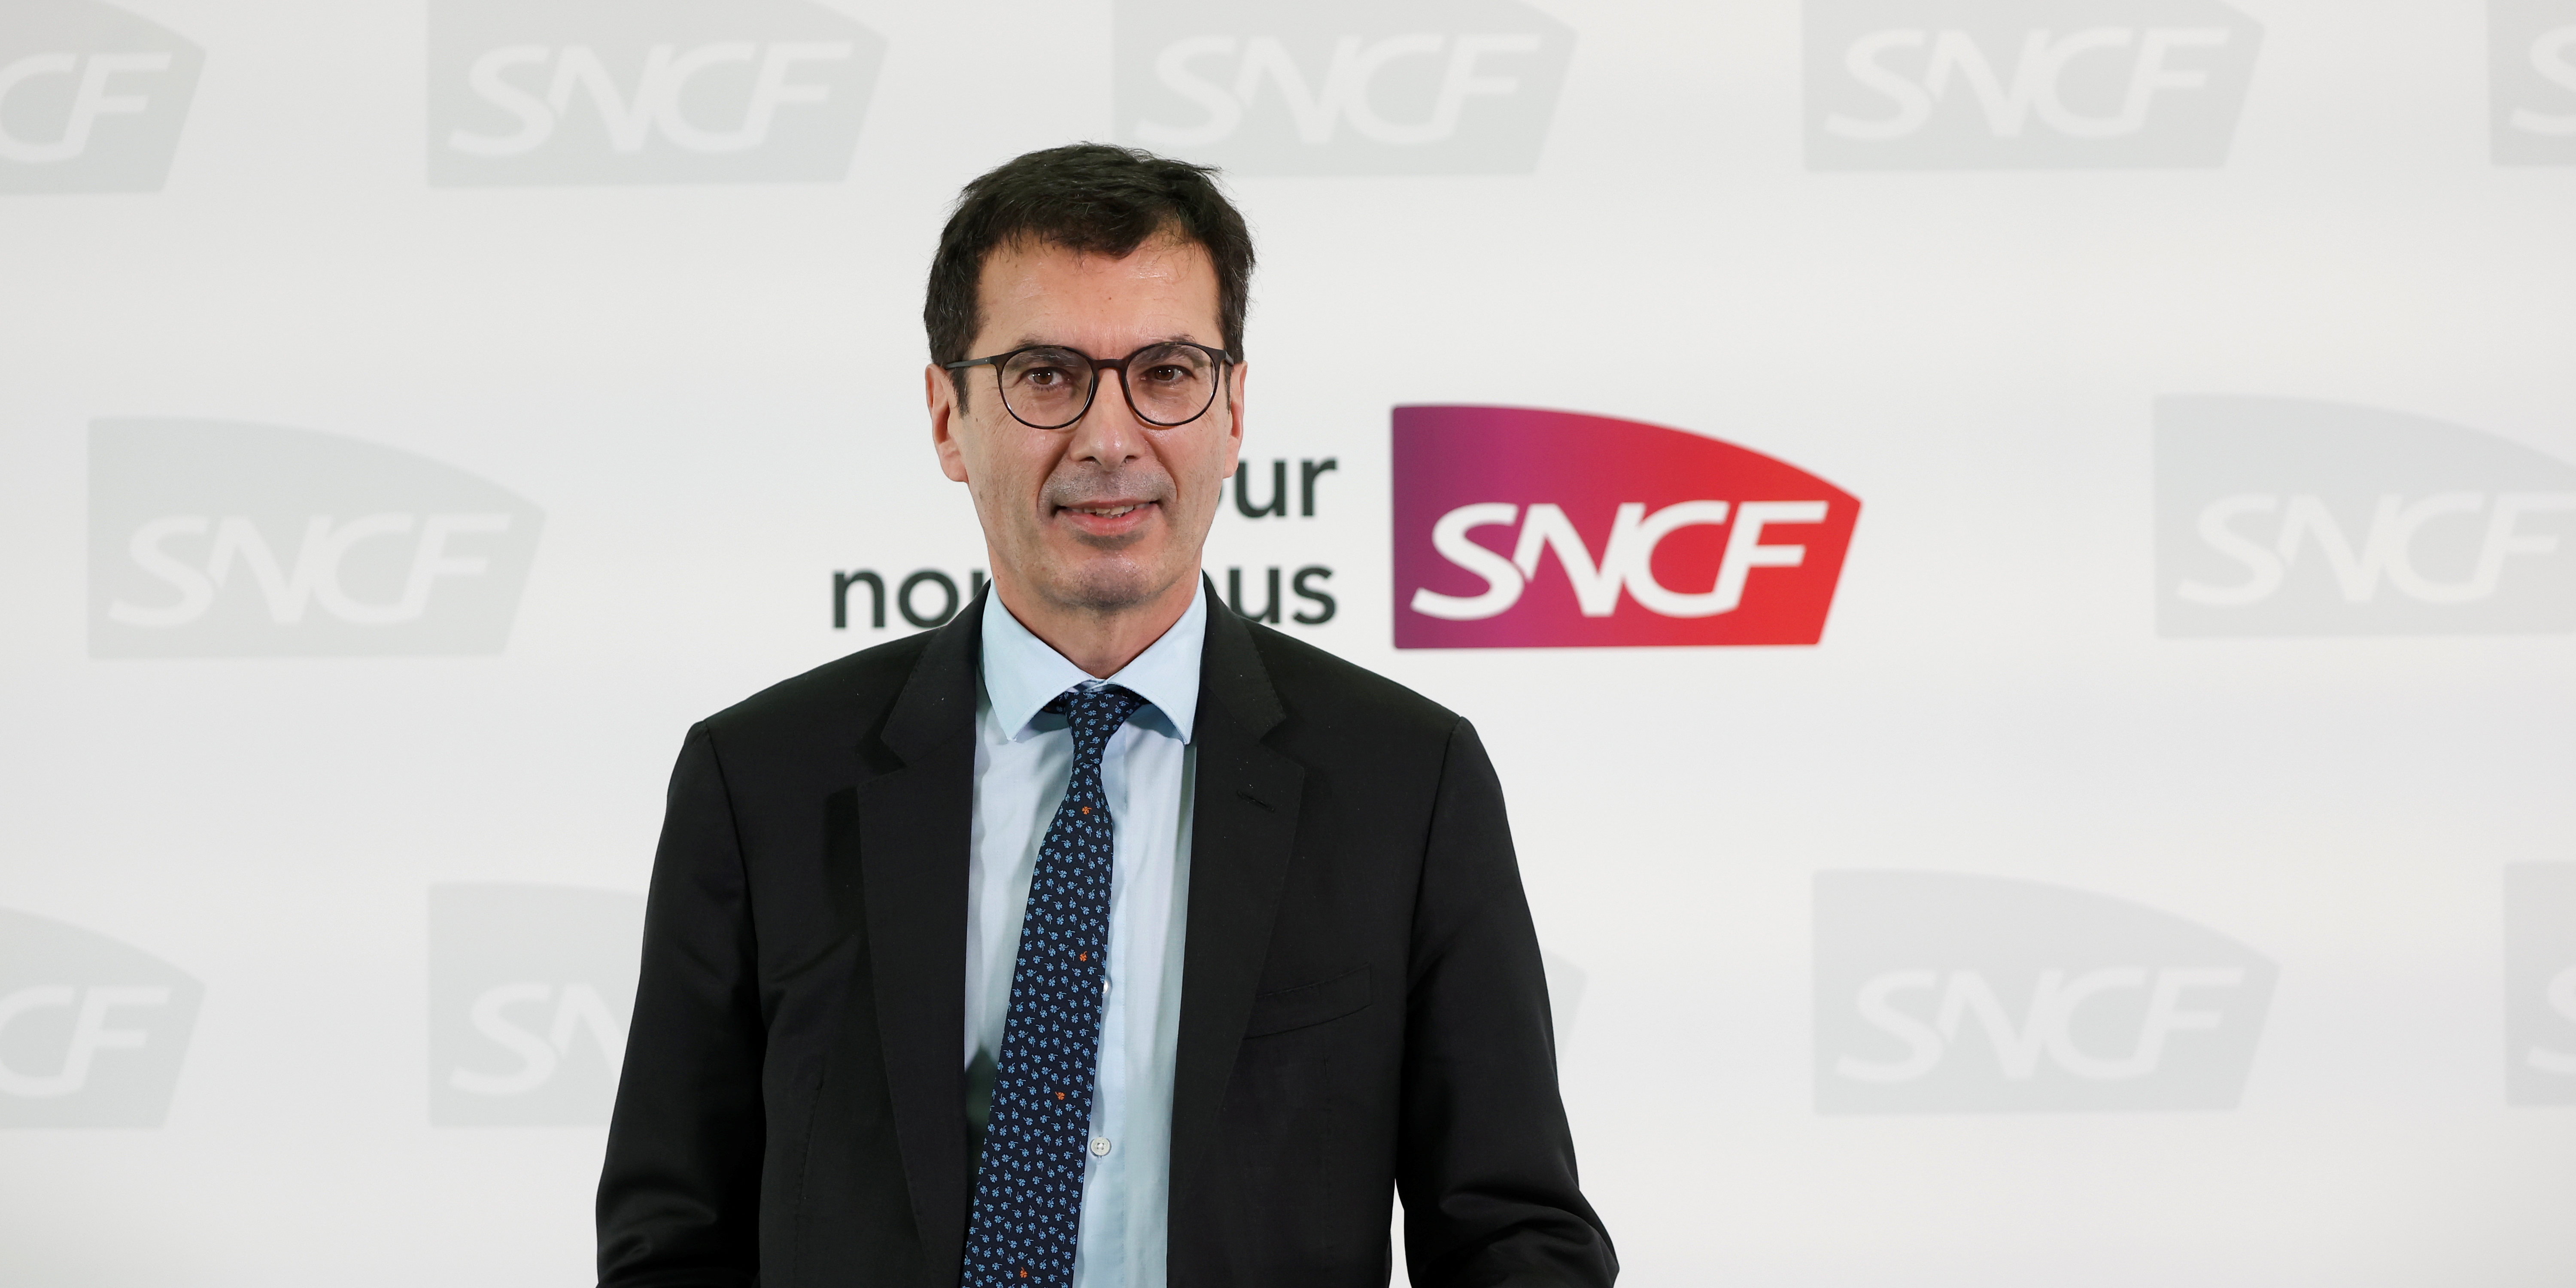 Polémique sur les fins de carrière des cheminots : « La SNCF gagne 1,3 milliard d'euros, elle peut bien financer 35 millions d'euros » (Farandou)